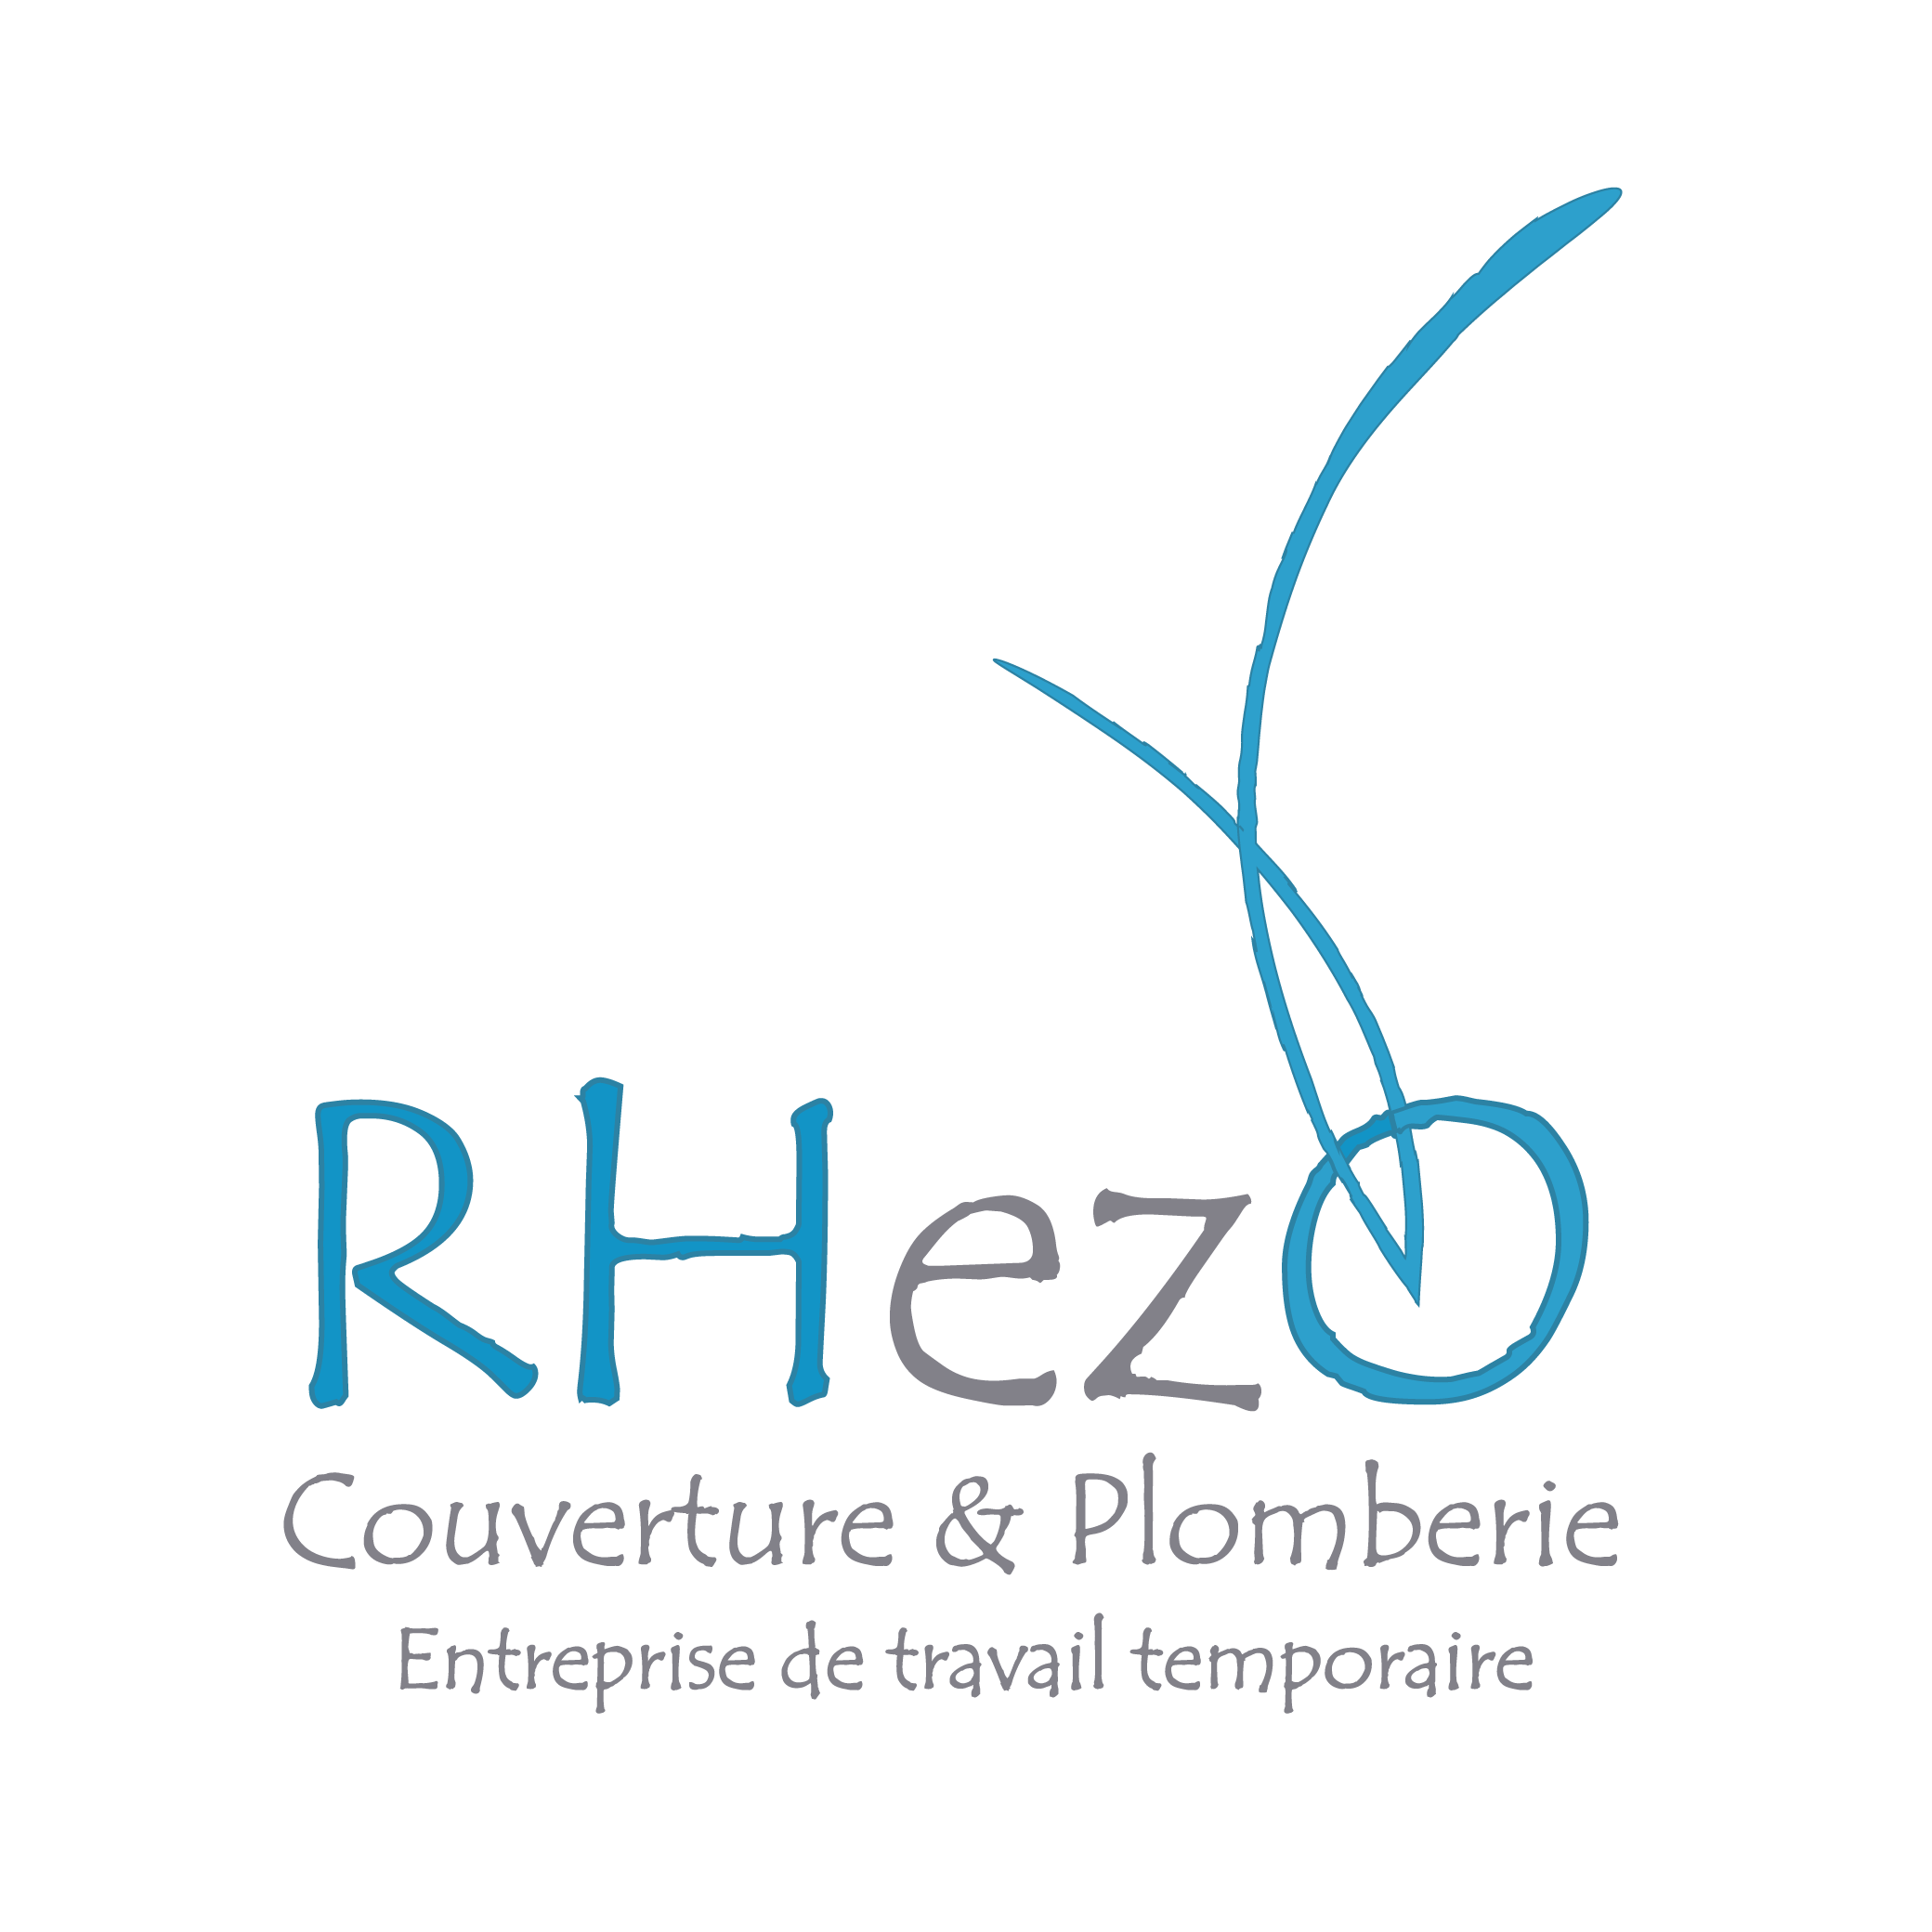 Rhezo Couverture & Plomberie